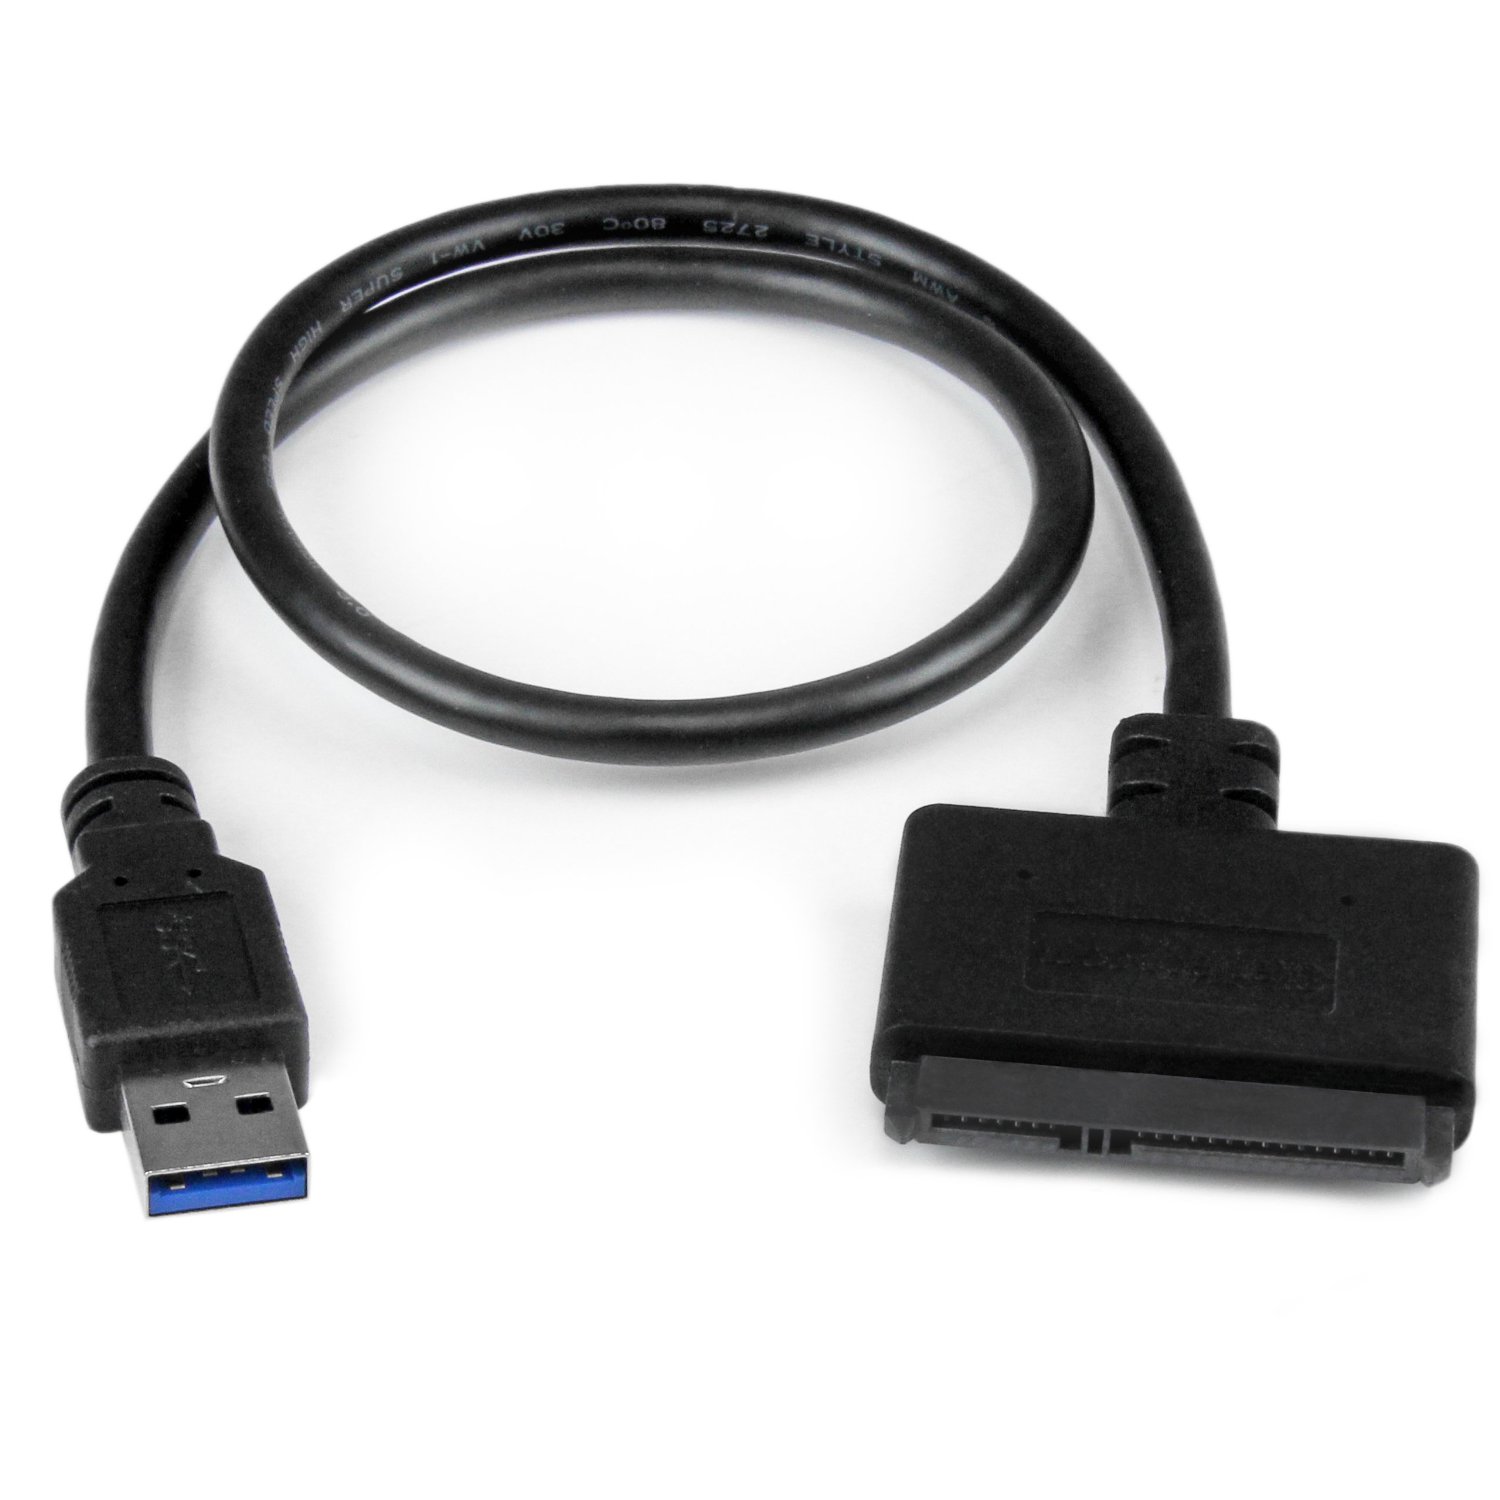 USBSATA Cable.jpg